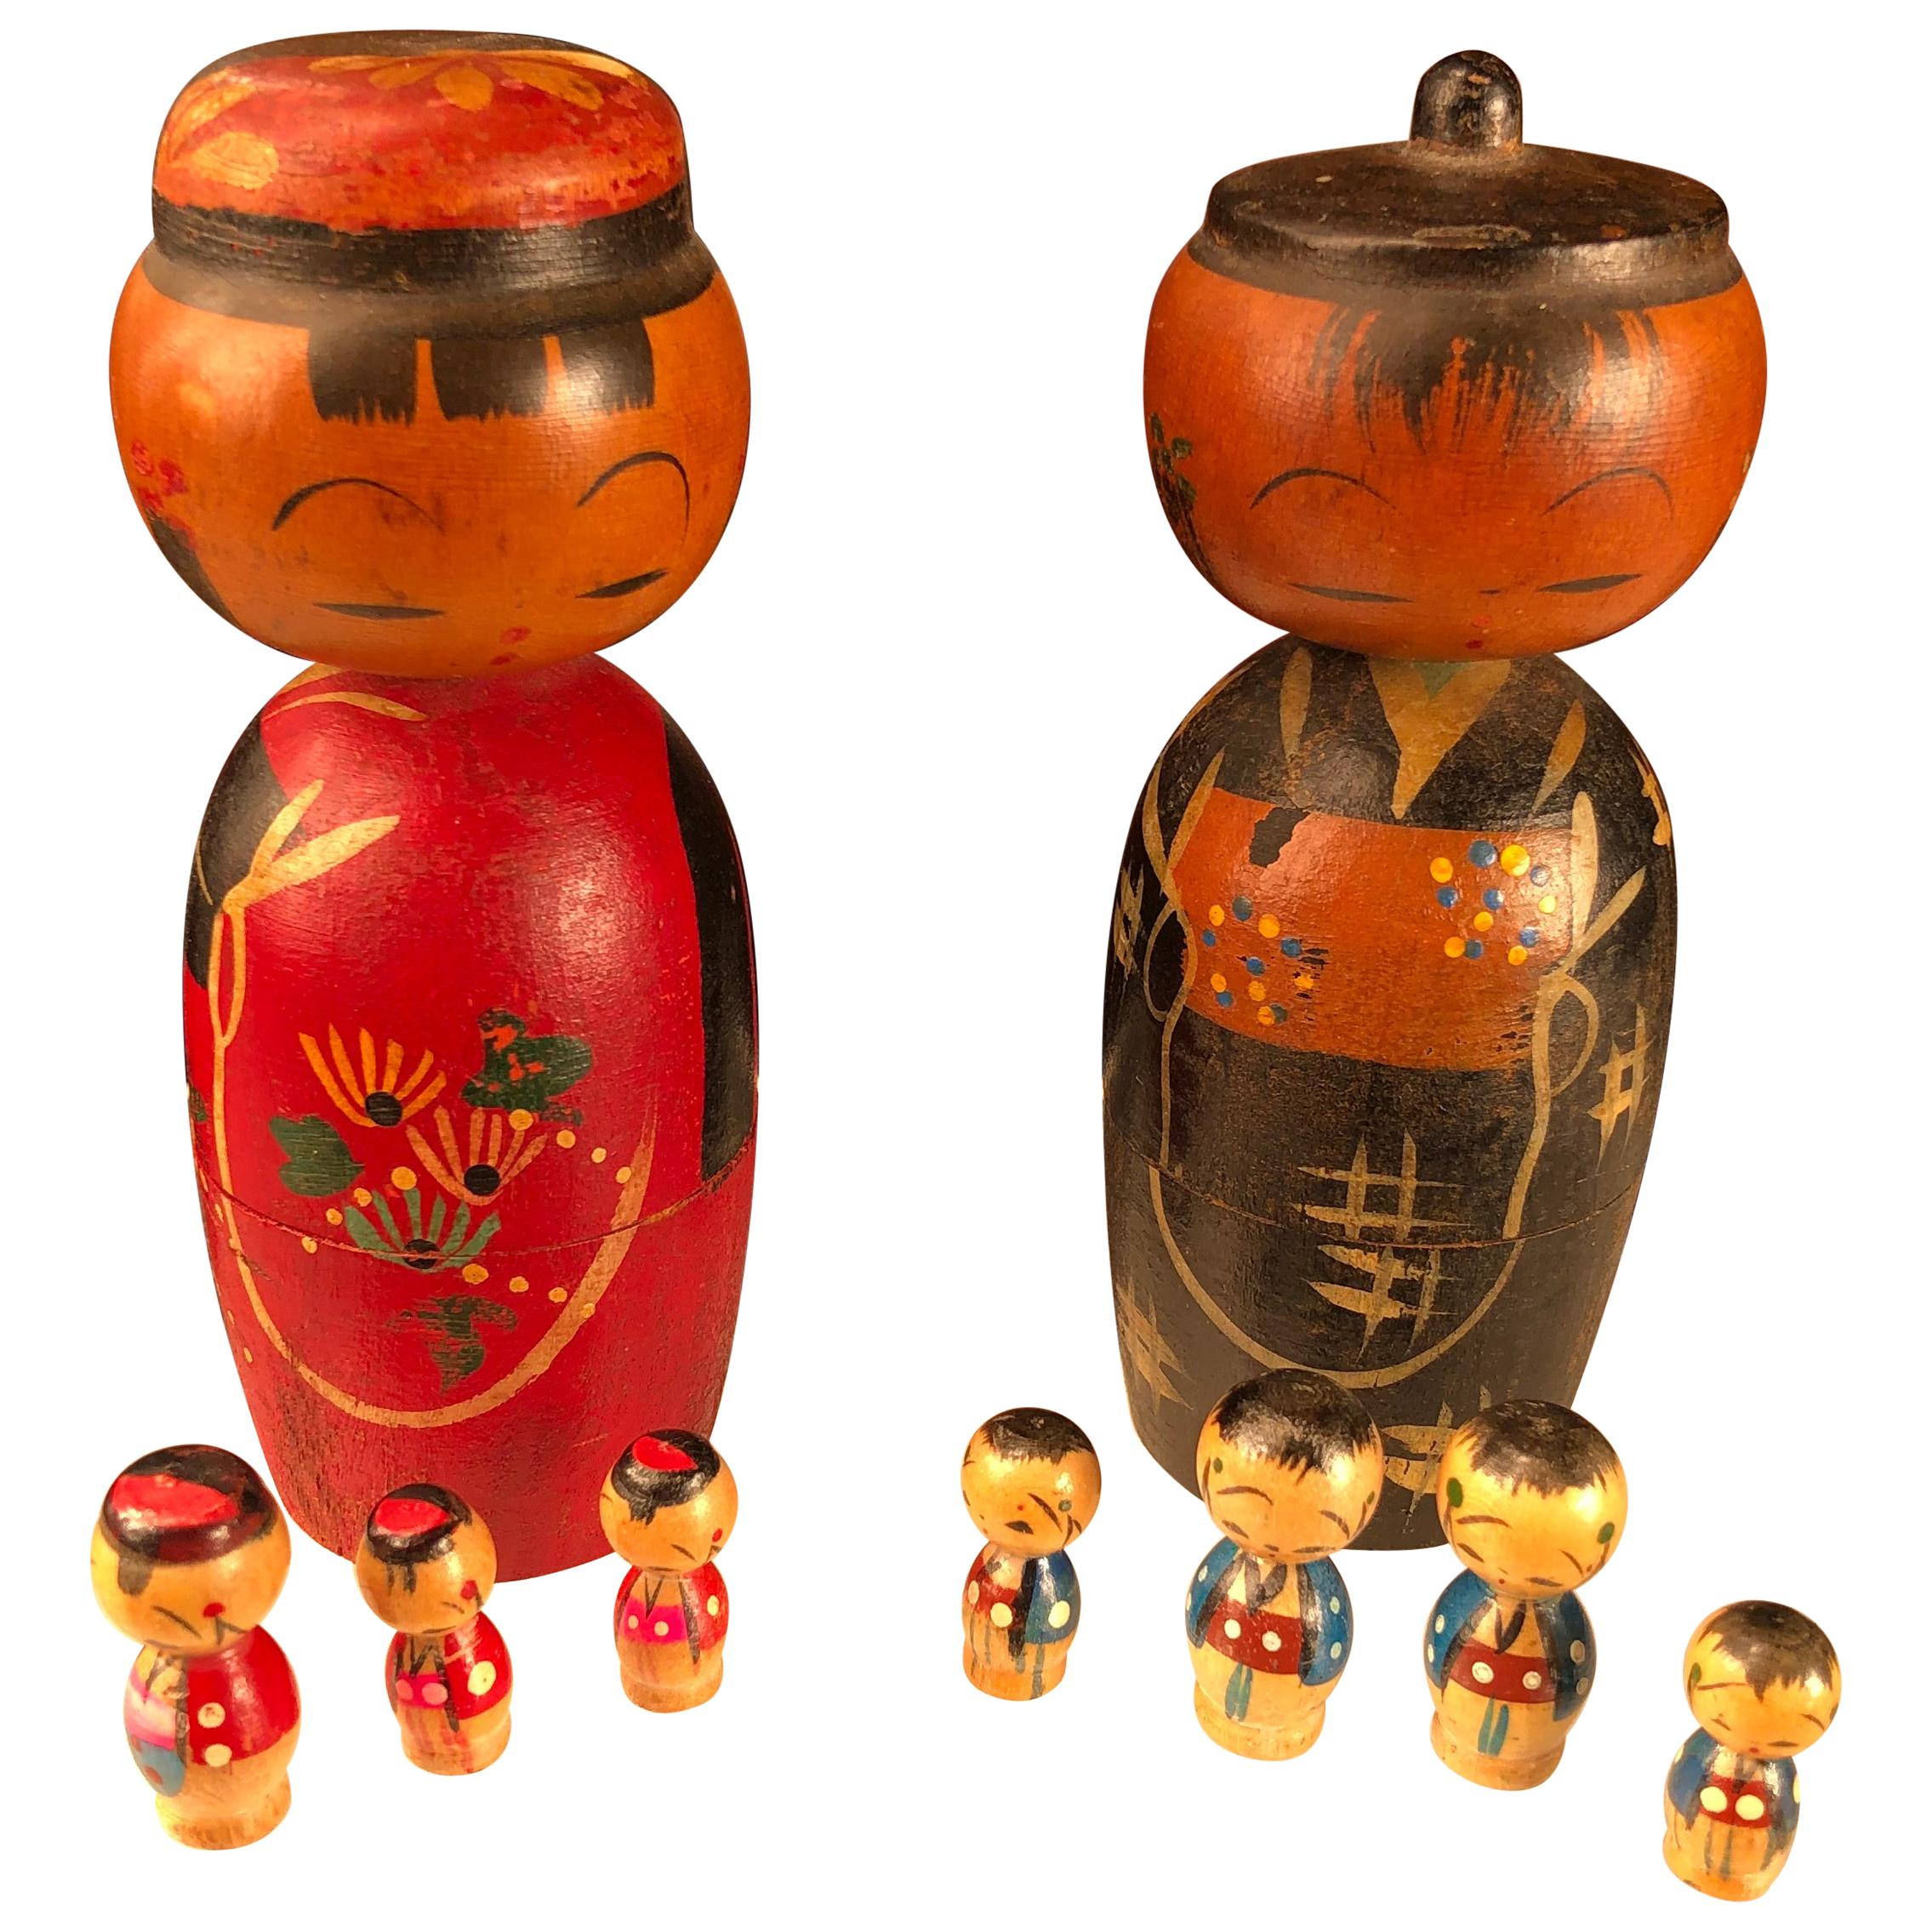 Japanese Family Nine Old "Kokeshi Dolls" Famous Bobble Heads and Children